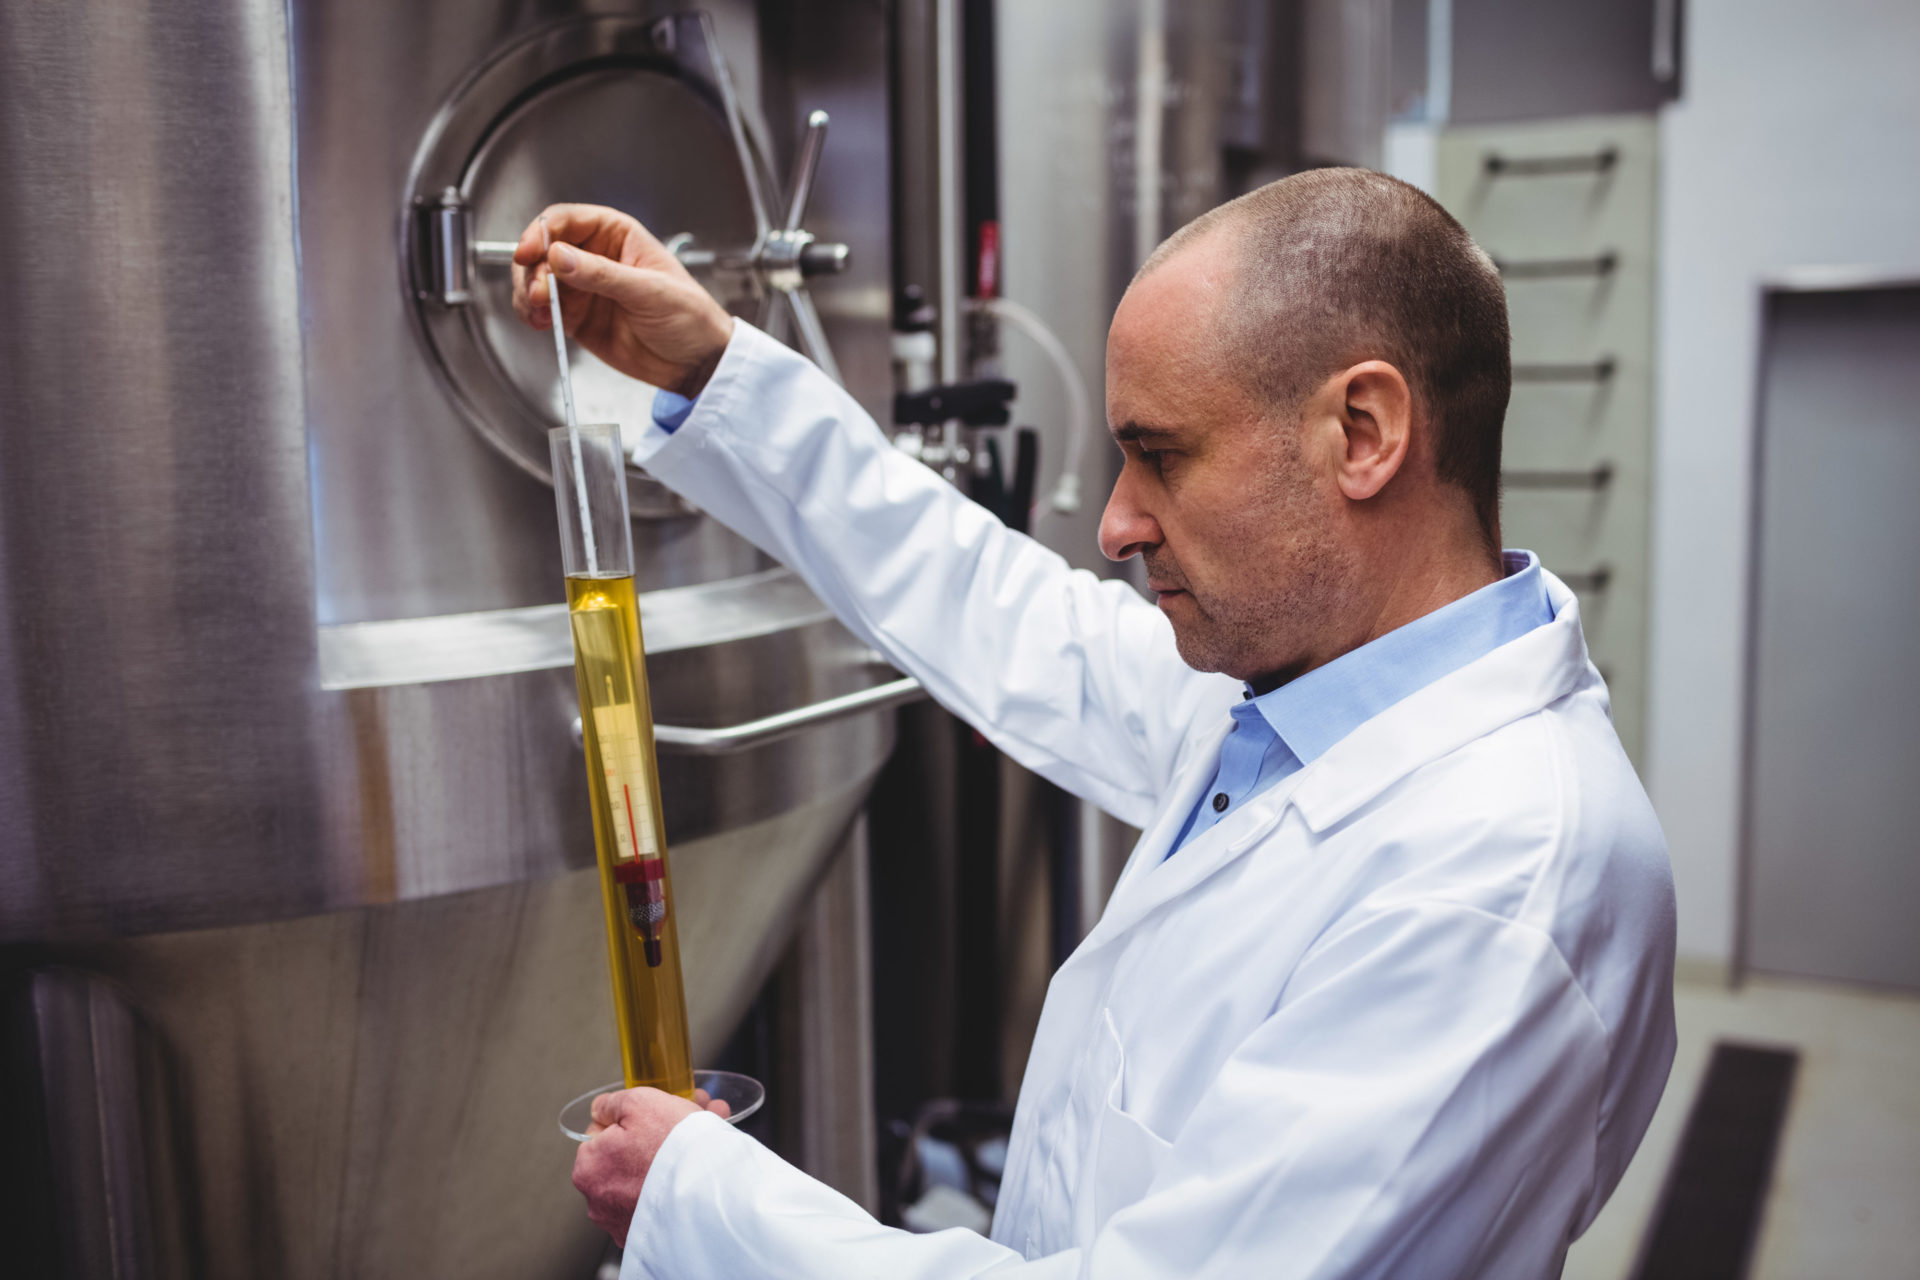 Abwassertechnik, ein Mitarbeiter in einem weißen Kittel, der die Qualität des Beers mithilfe eines Thermometers in einer Brauerei überprüft